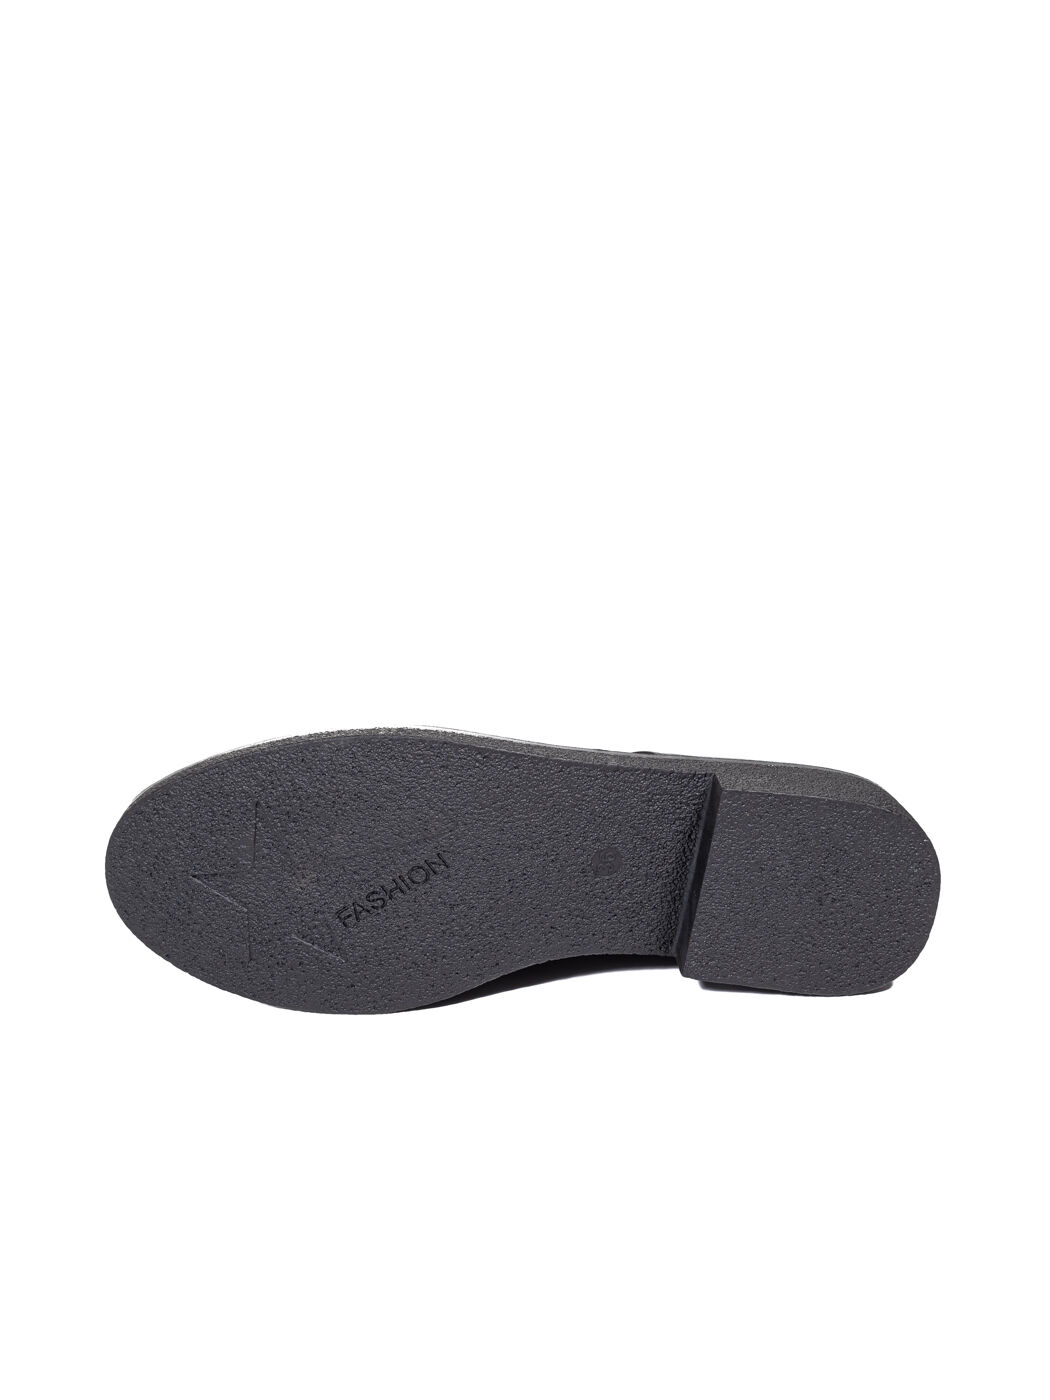 Туфли женские чёрные экокожа каблук устойчивый демисезон 150-1_M вид 1